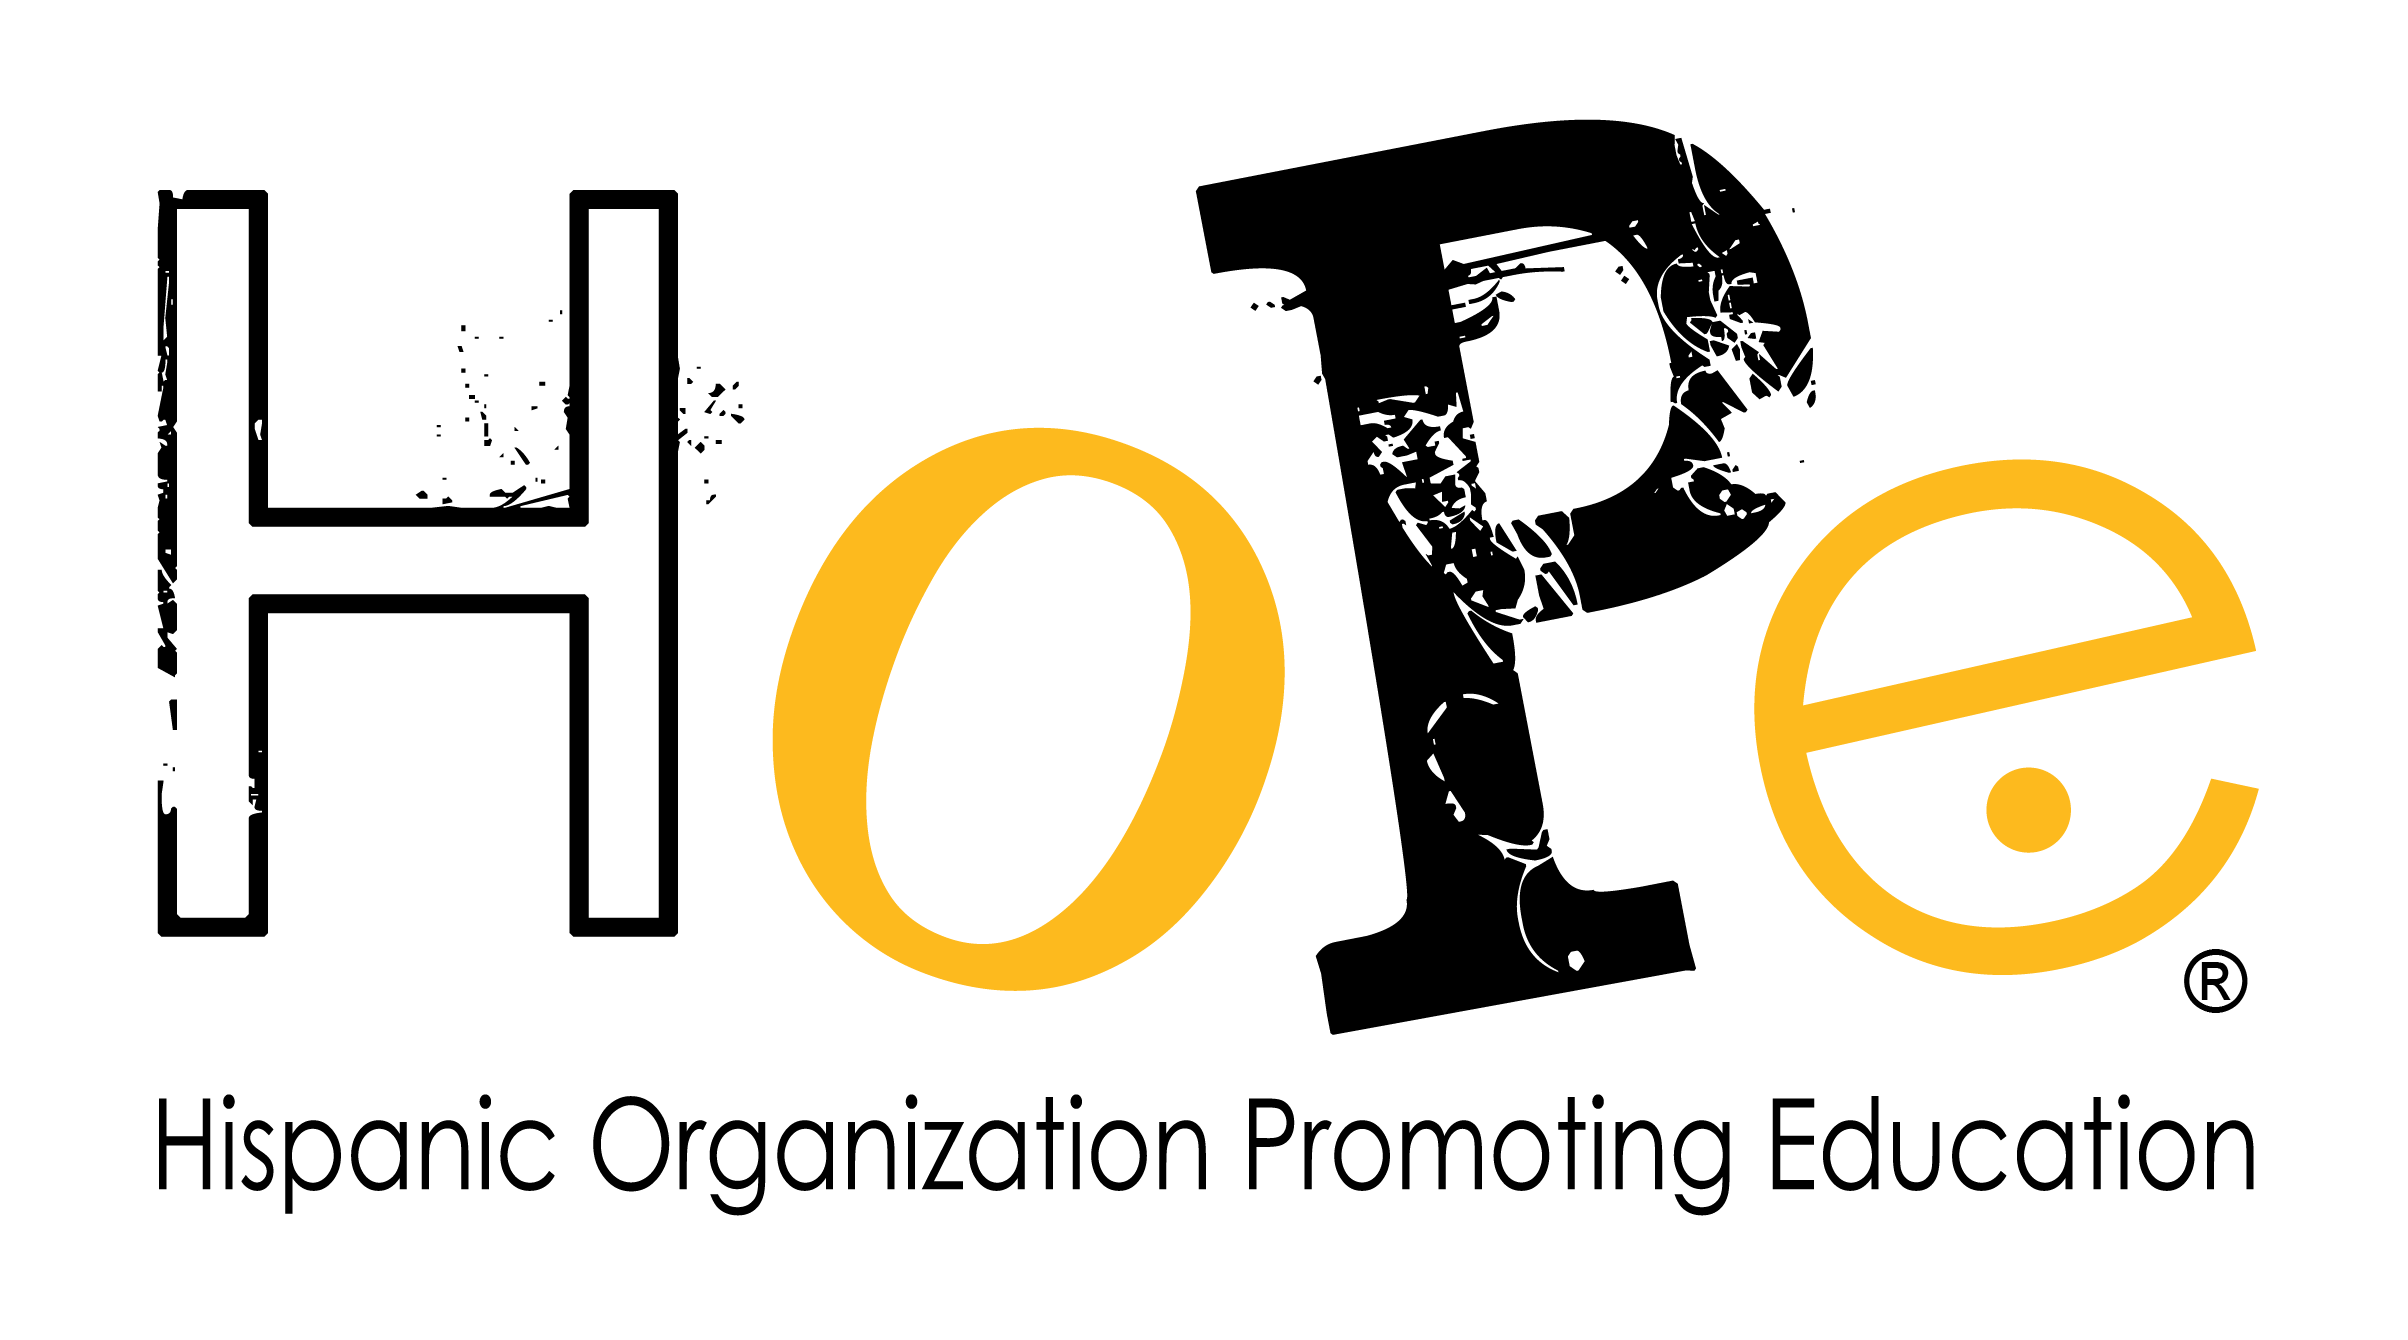 HoPe (Hispanic Organization Promoting Education), Inc.